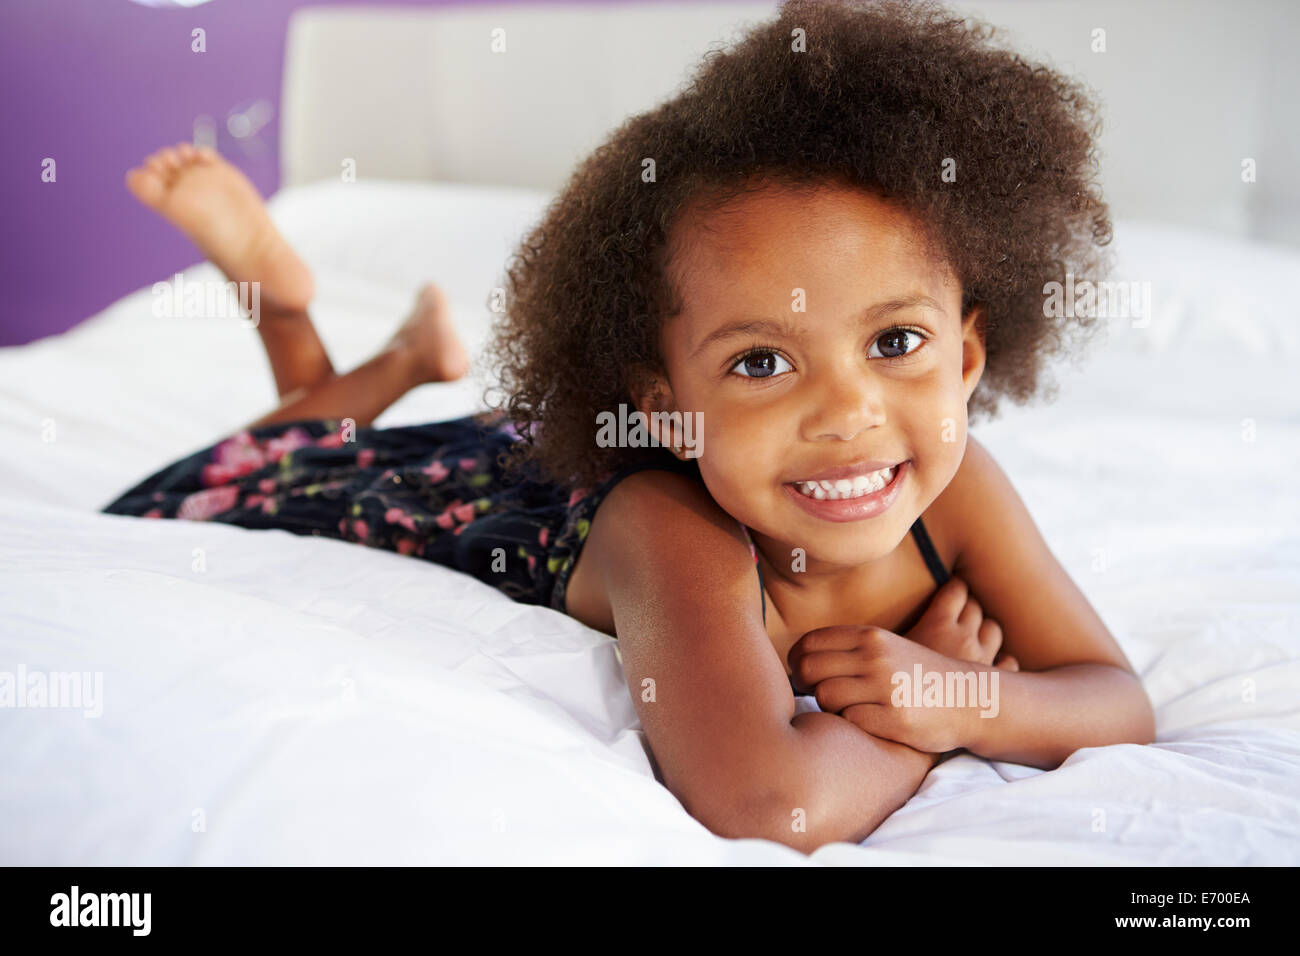 Niedliche kleine Mädchen liegend auf Bauch im Bett der Eltern  Stockfotografie - Alamy